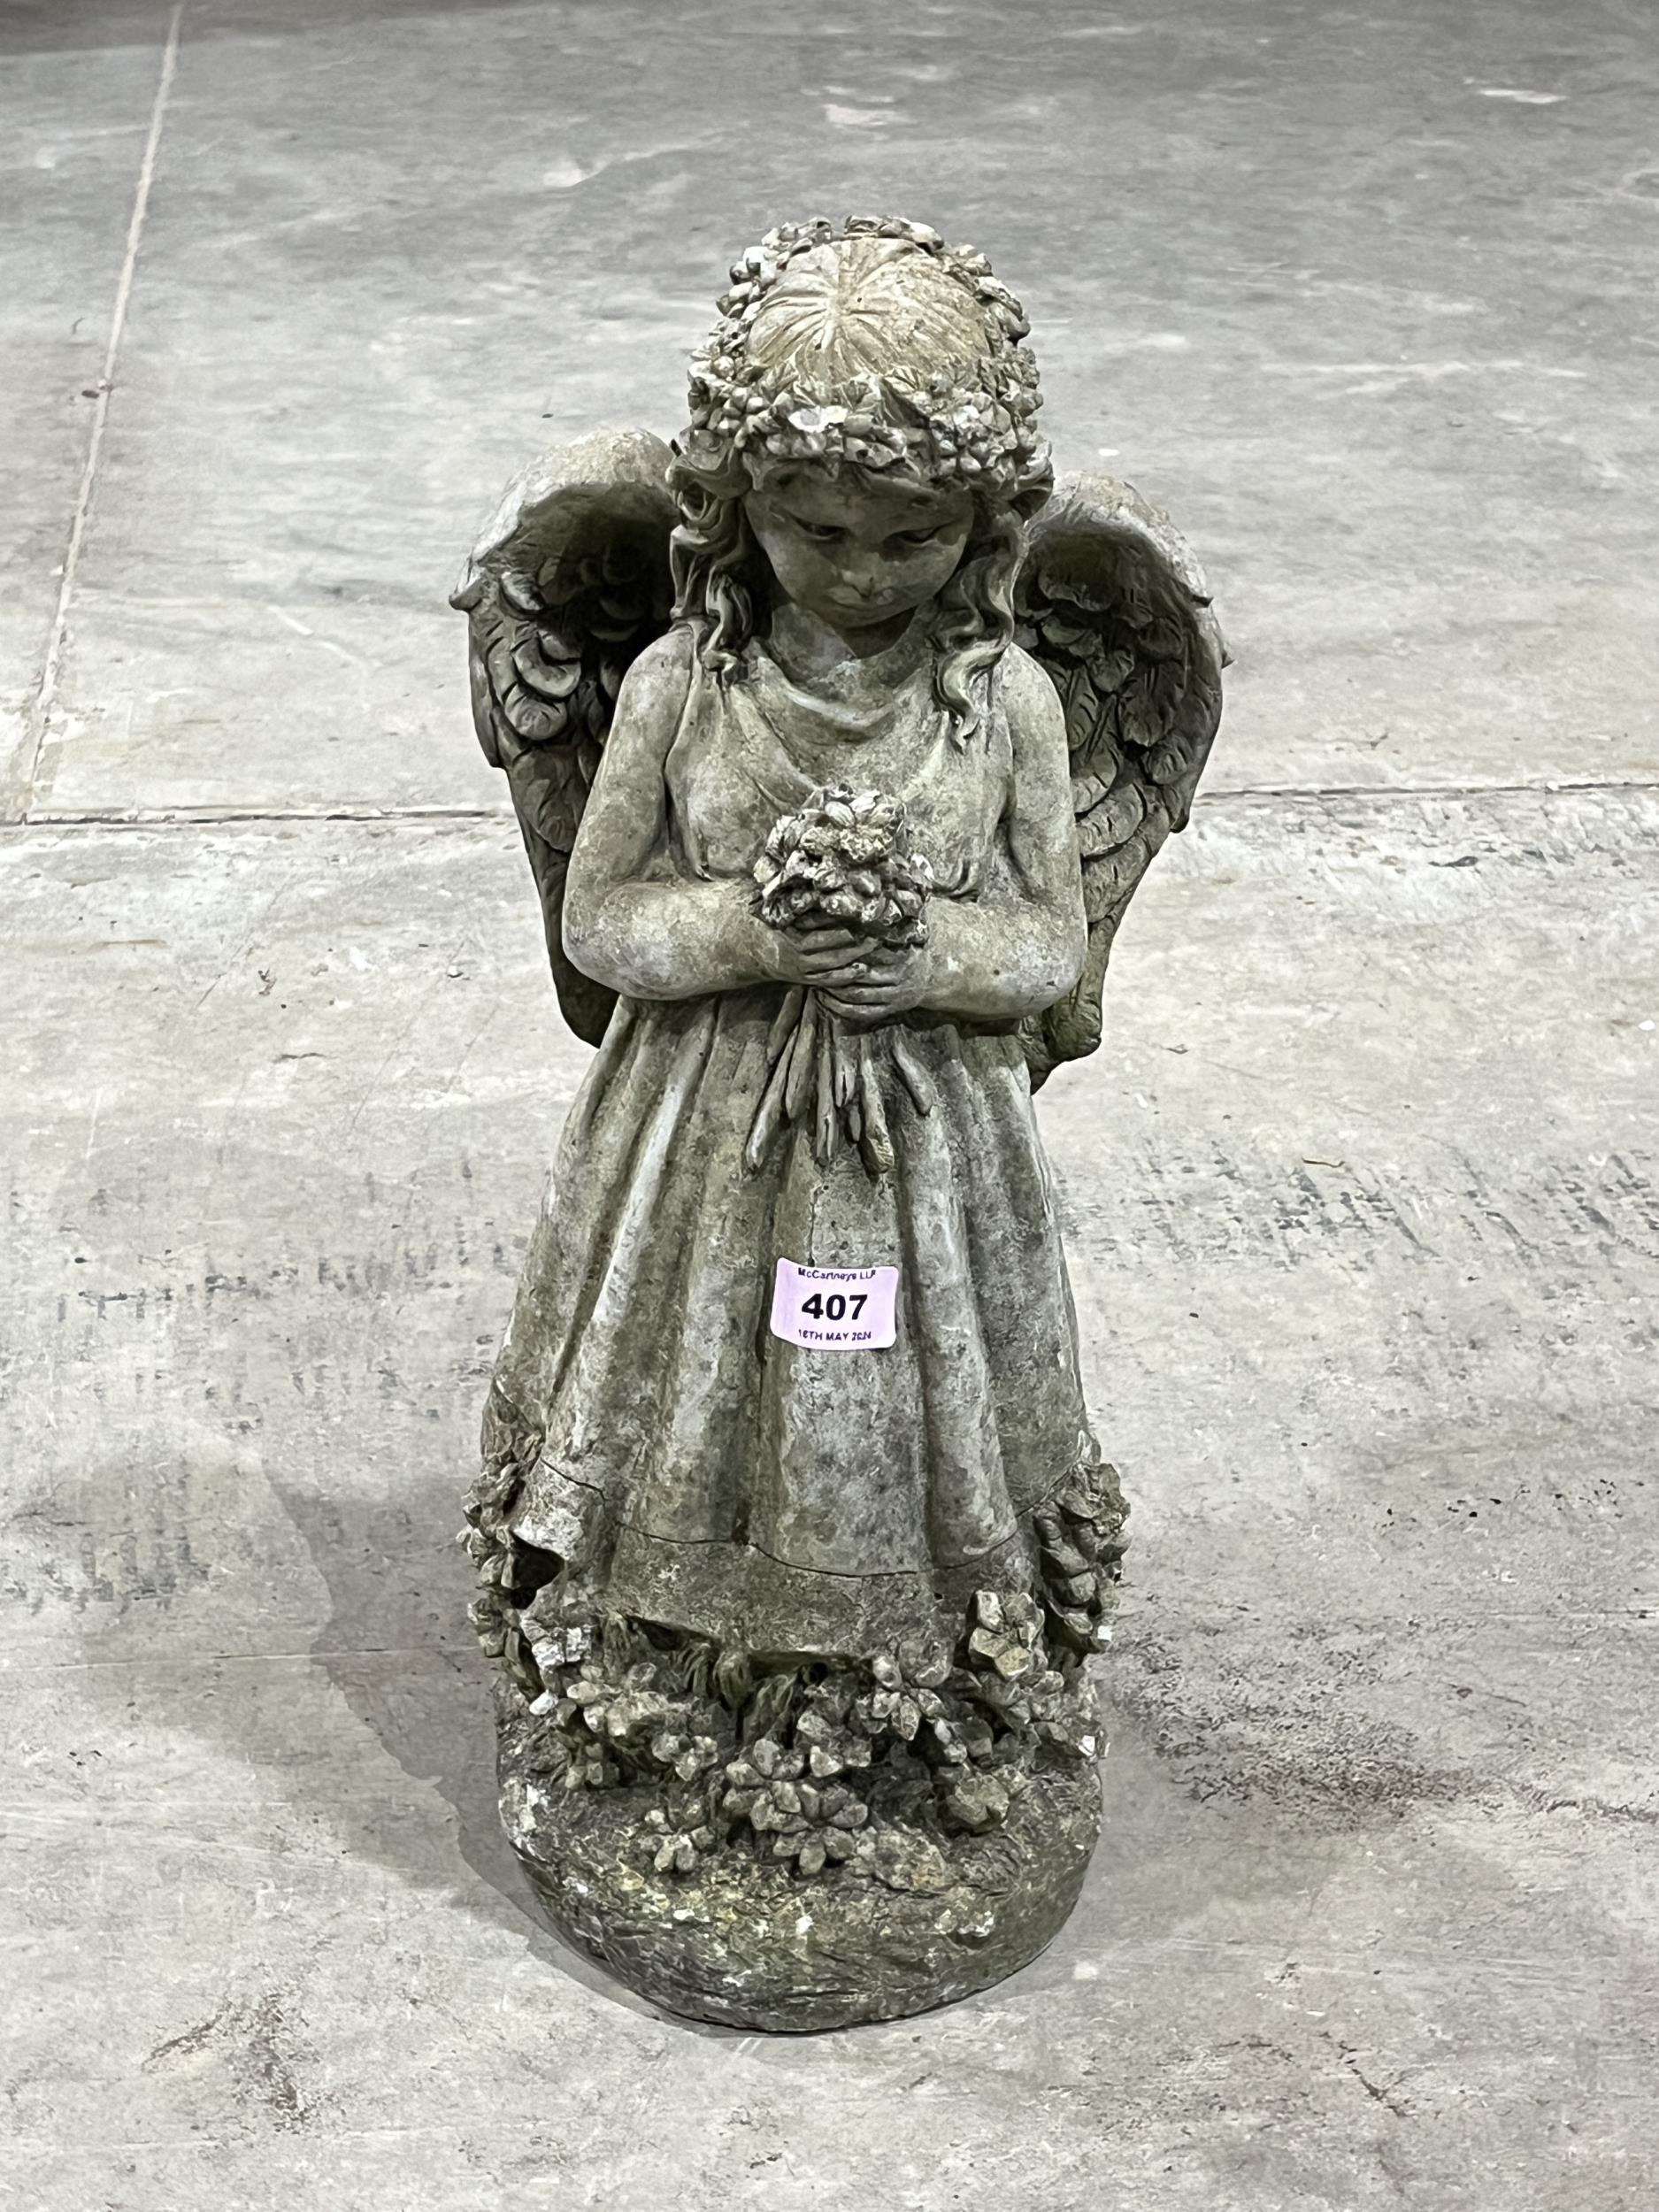 A garden statuary angel ornament. 18" high.